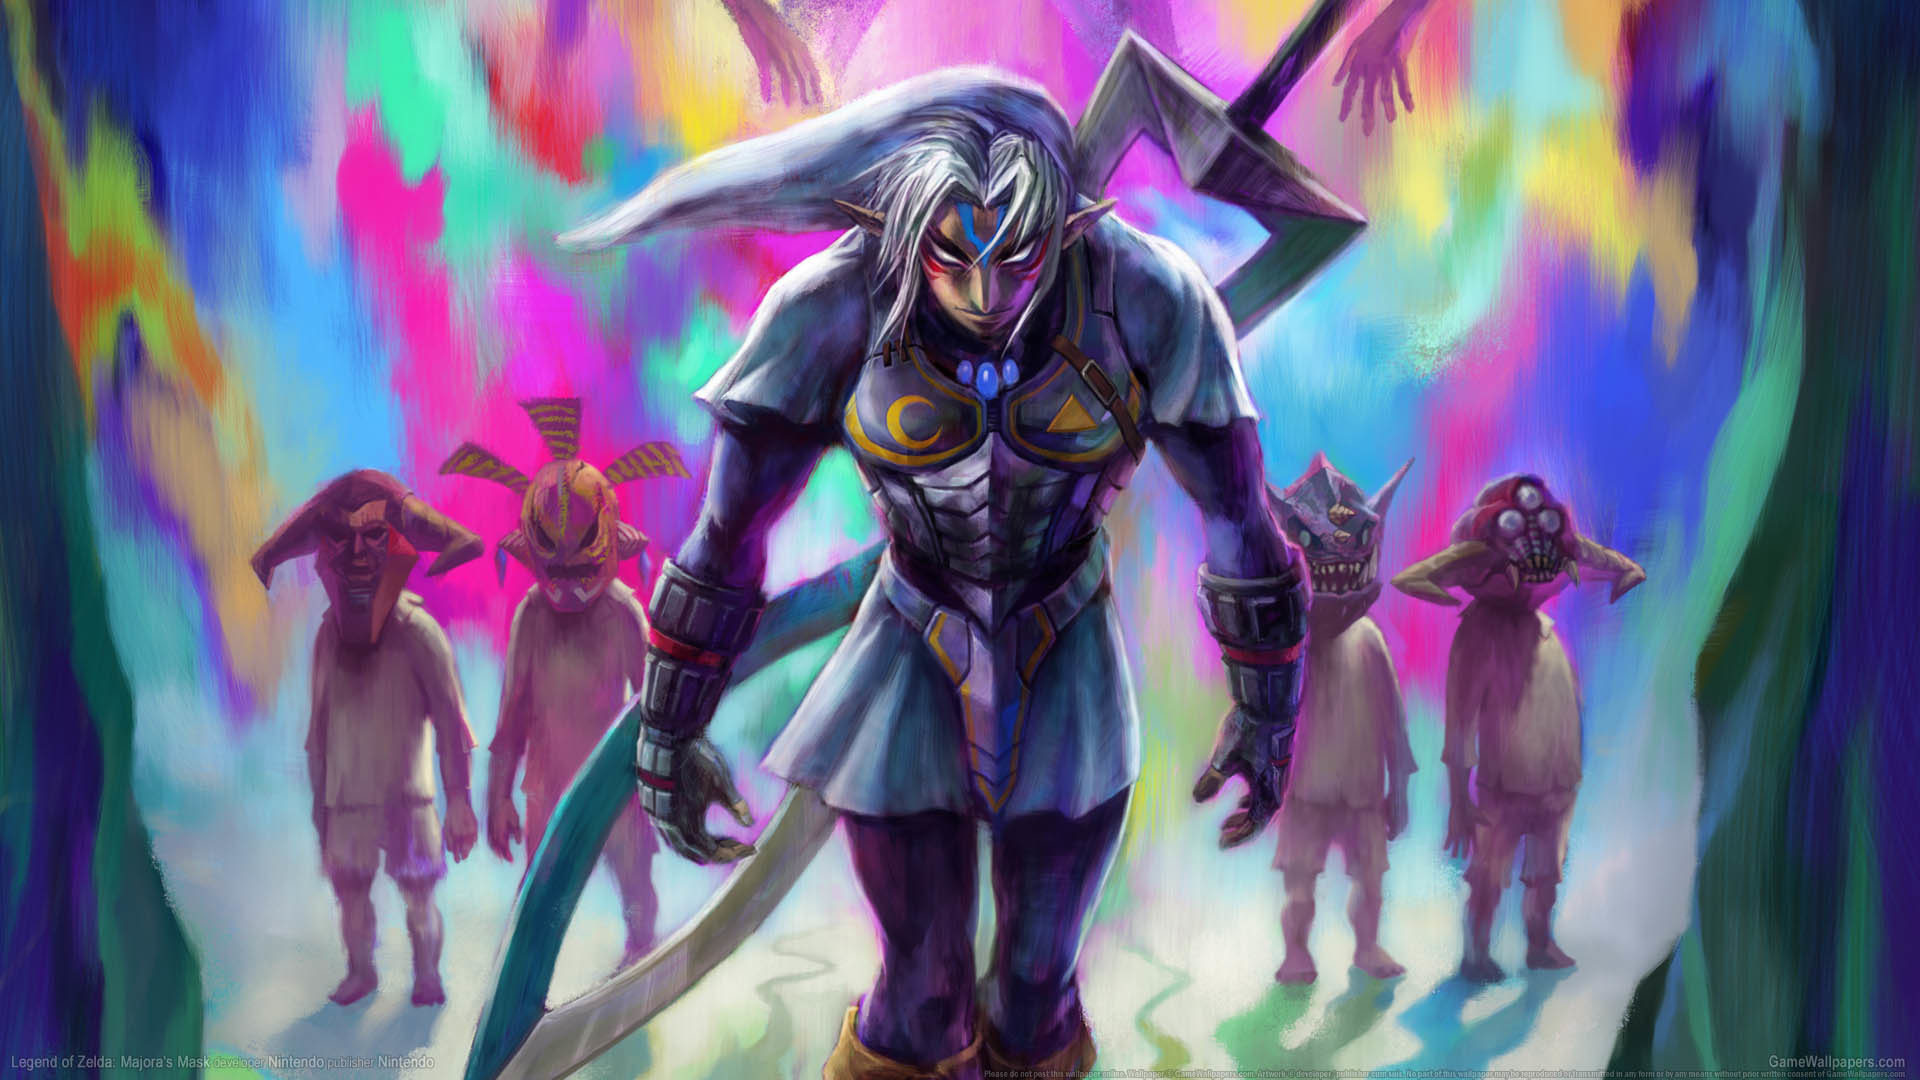 … Legend of Zelda: Majora's Mask wallpaper or background 02